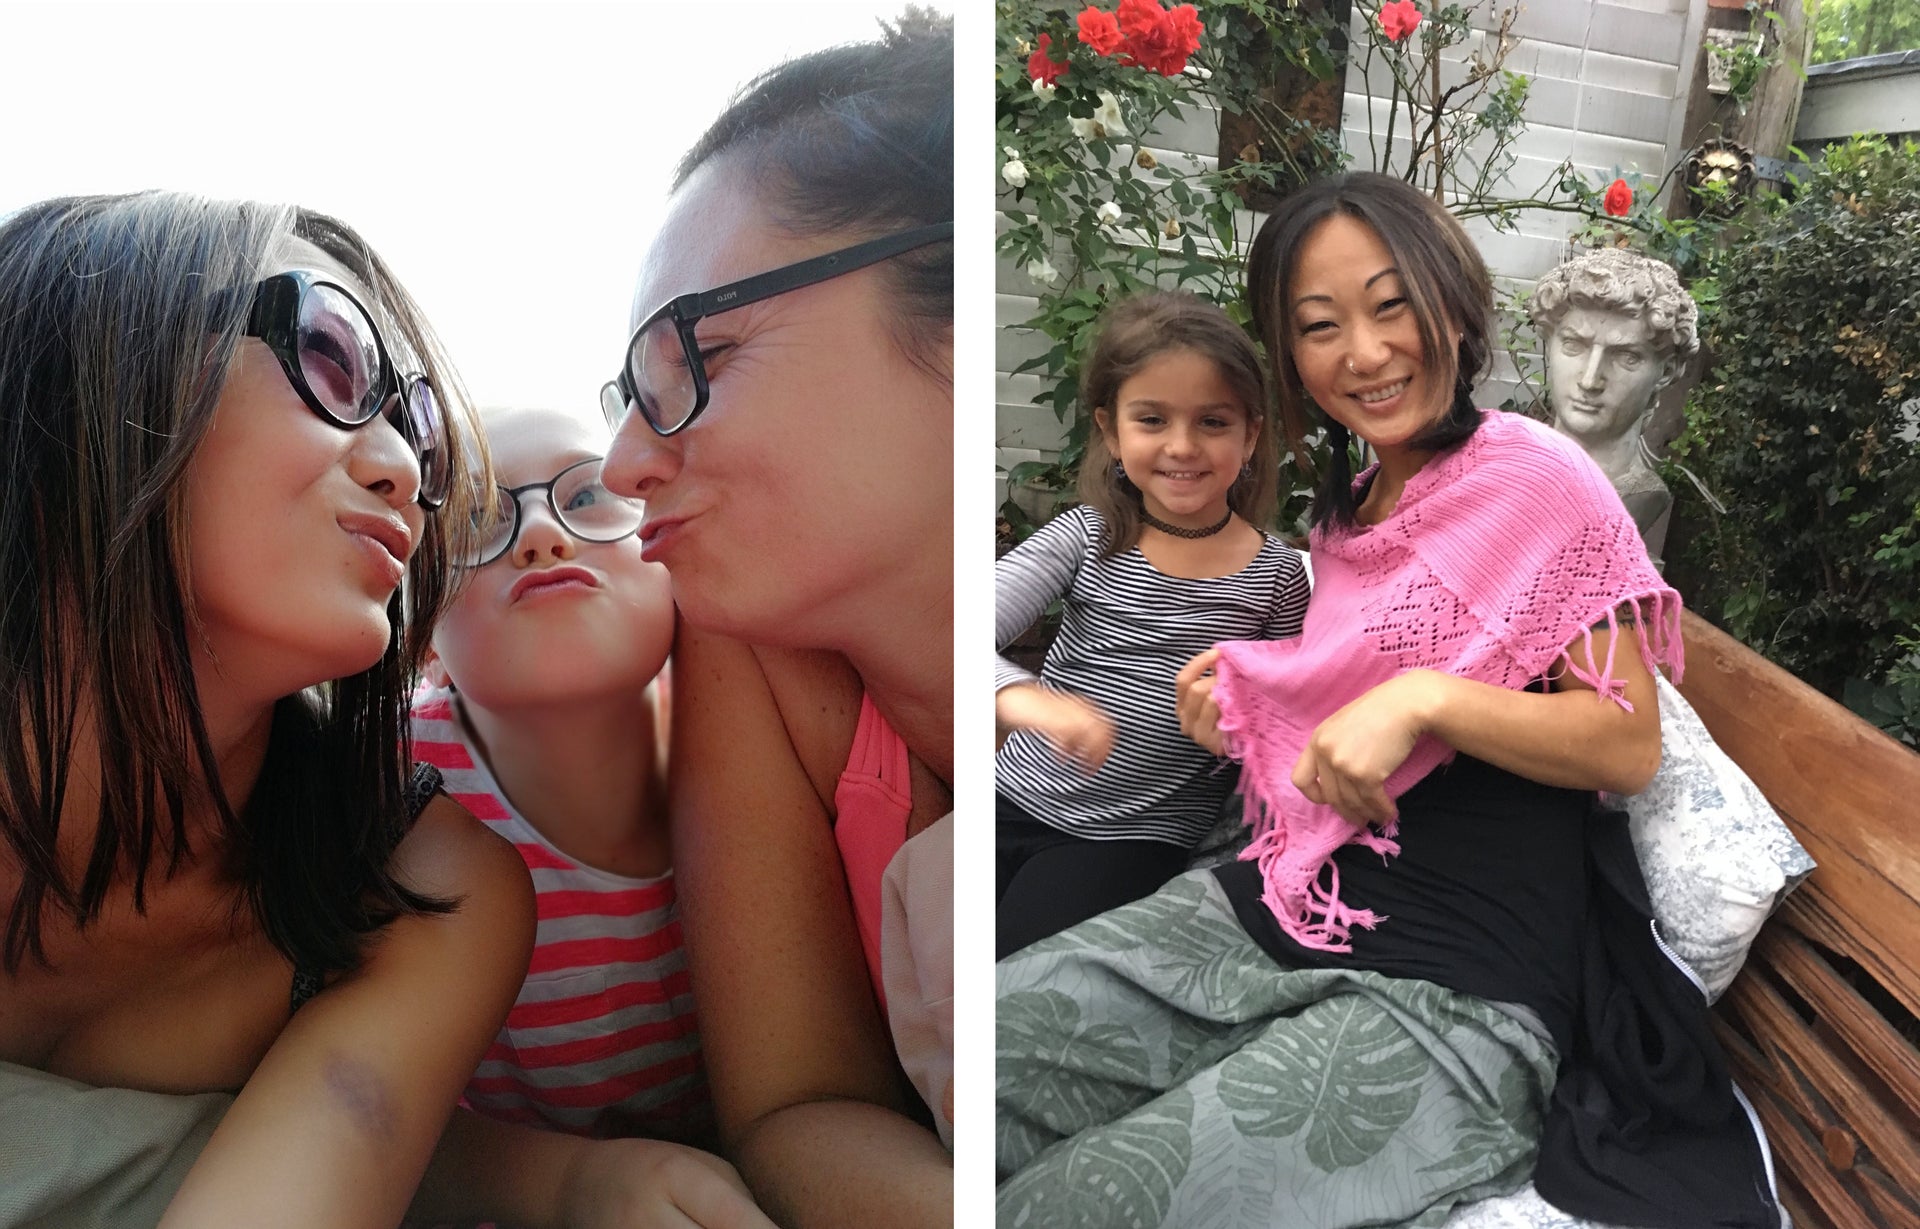 Auf dem linken Foto ist Madeleine mit zwei weiteren Personen zu sehen, die sich einen Kuss zuwerfen. Auf dem rechten Foto sitzt Madeleine mit einem Kind auf einer Bank in einem Garten.